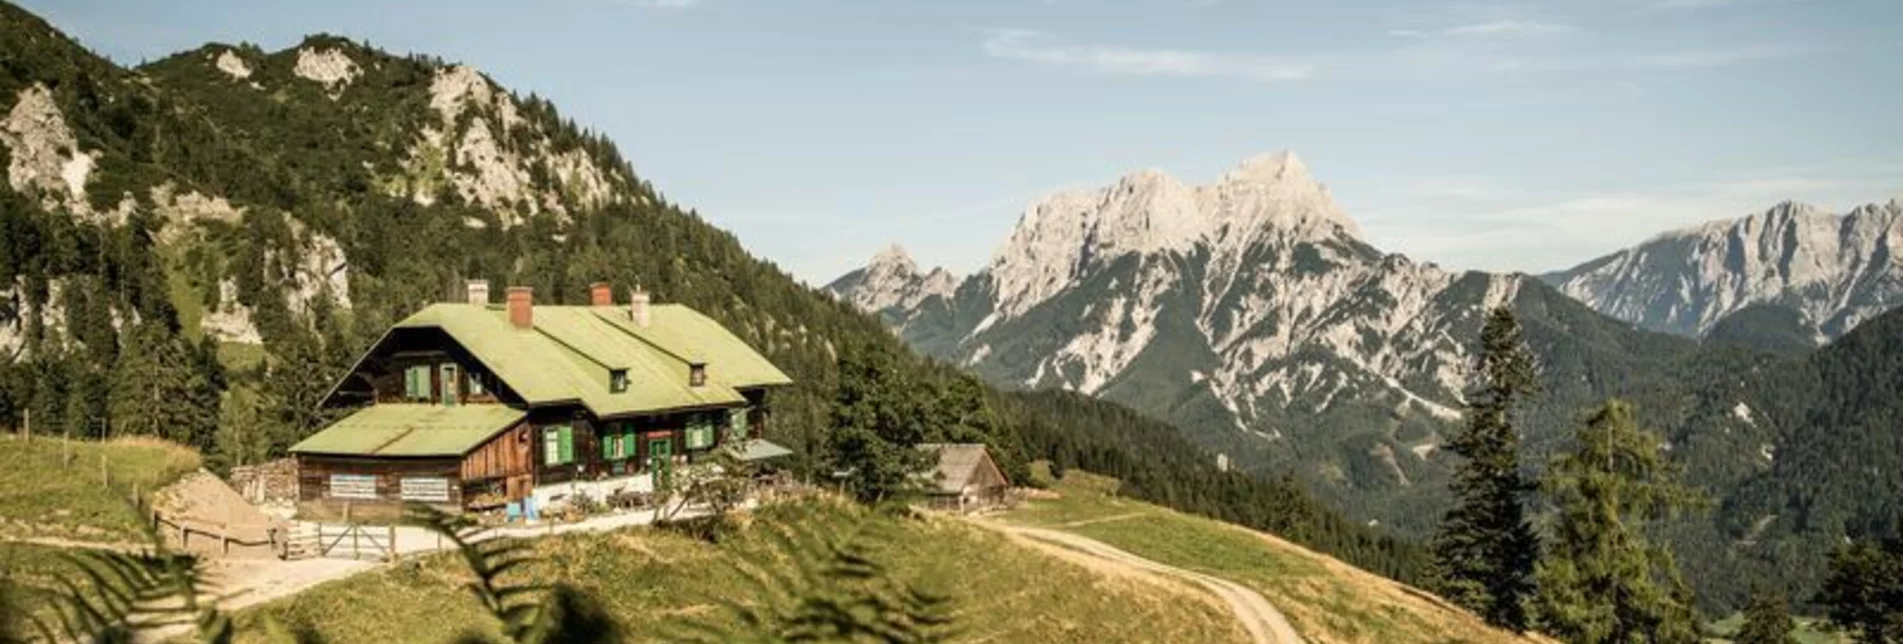 Hiking route From Buchauer Sattel to Grabneralm - Touren-Impression #1 | © TV Gesäuse